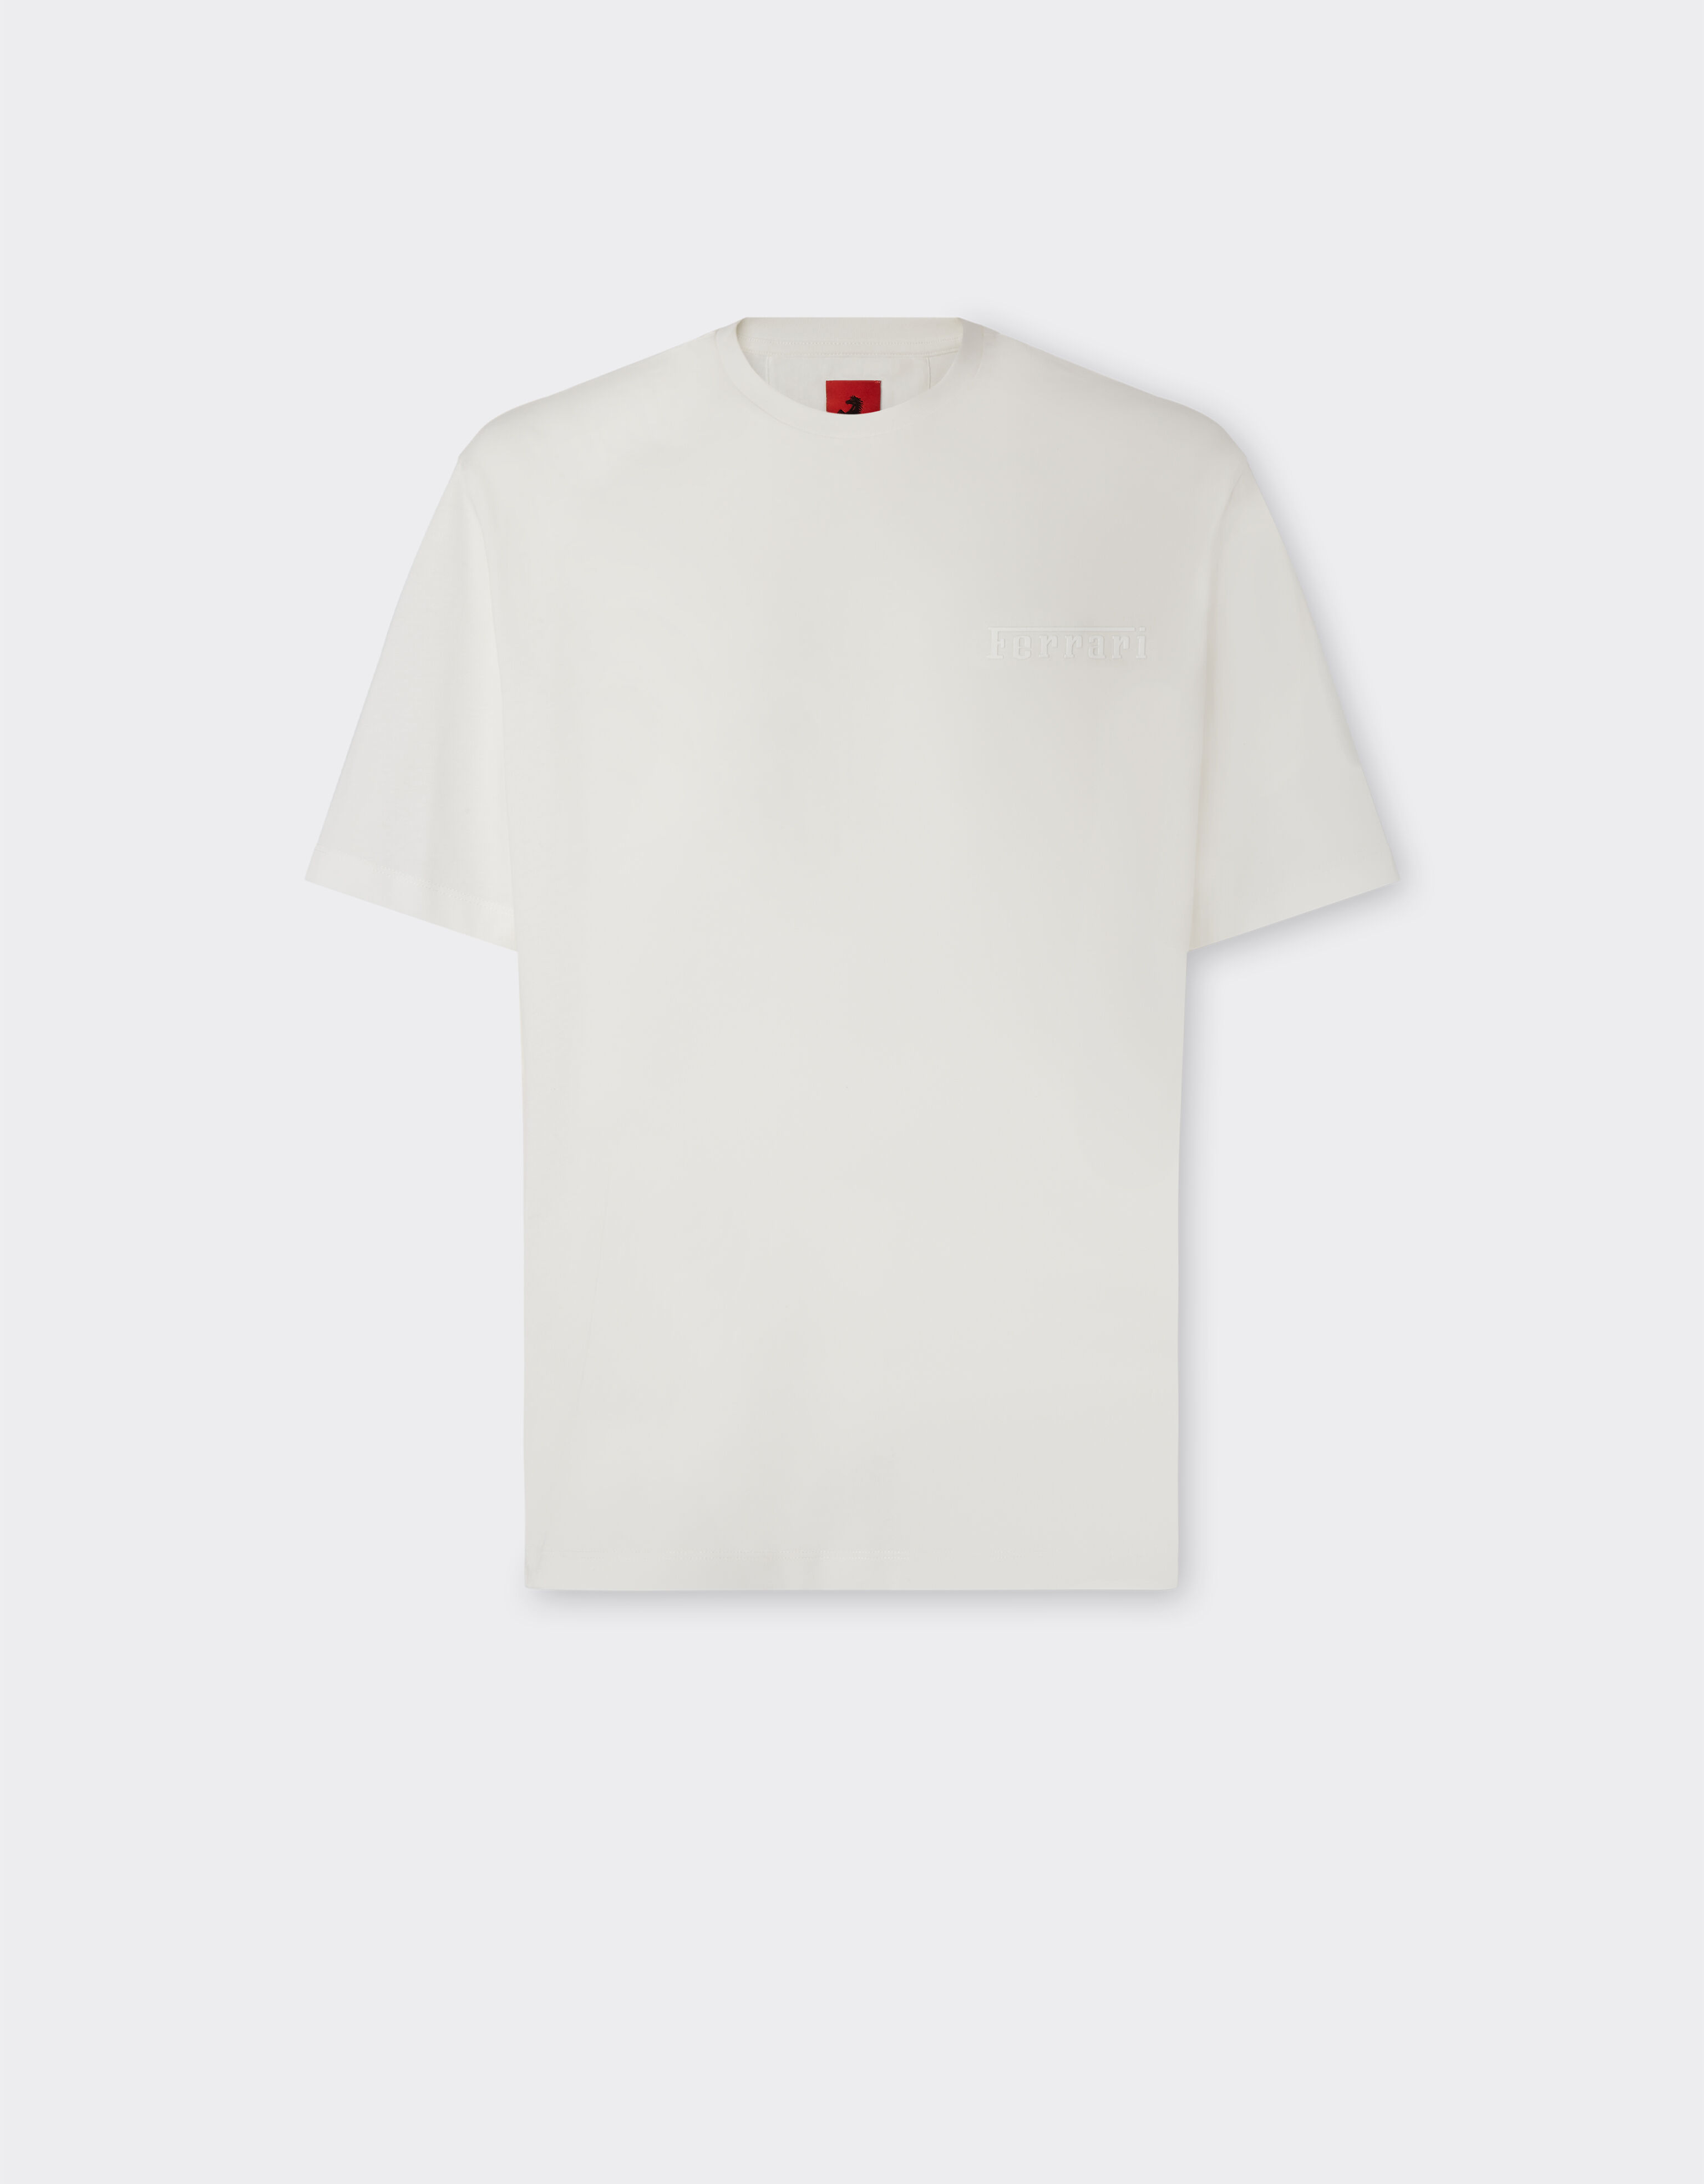 Ferrari T-Shirt aus Baumwolle mit Ferrari-Maxilogo Optisch Weiß 21135f